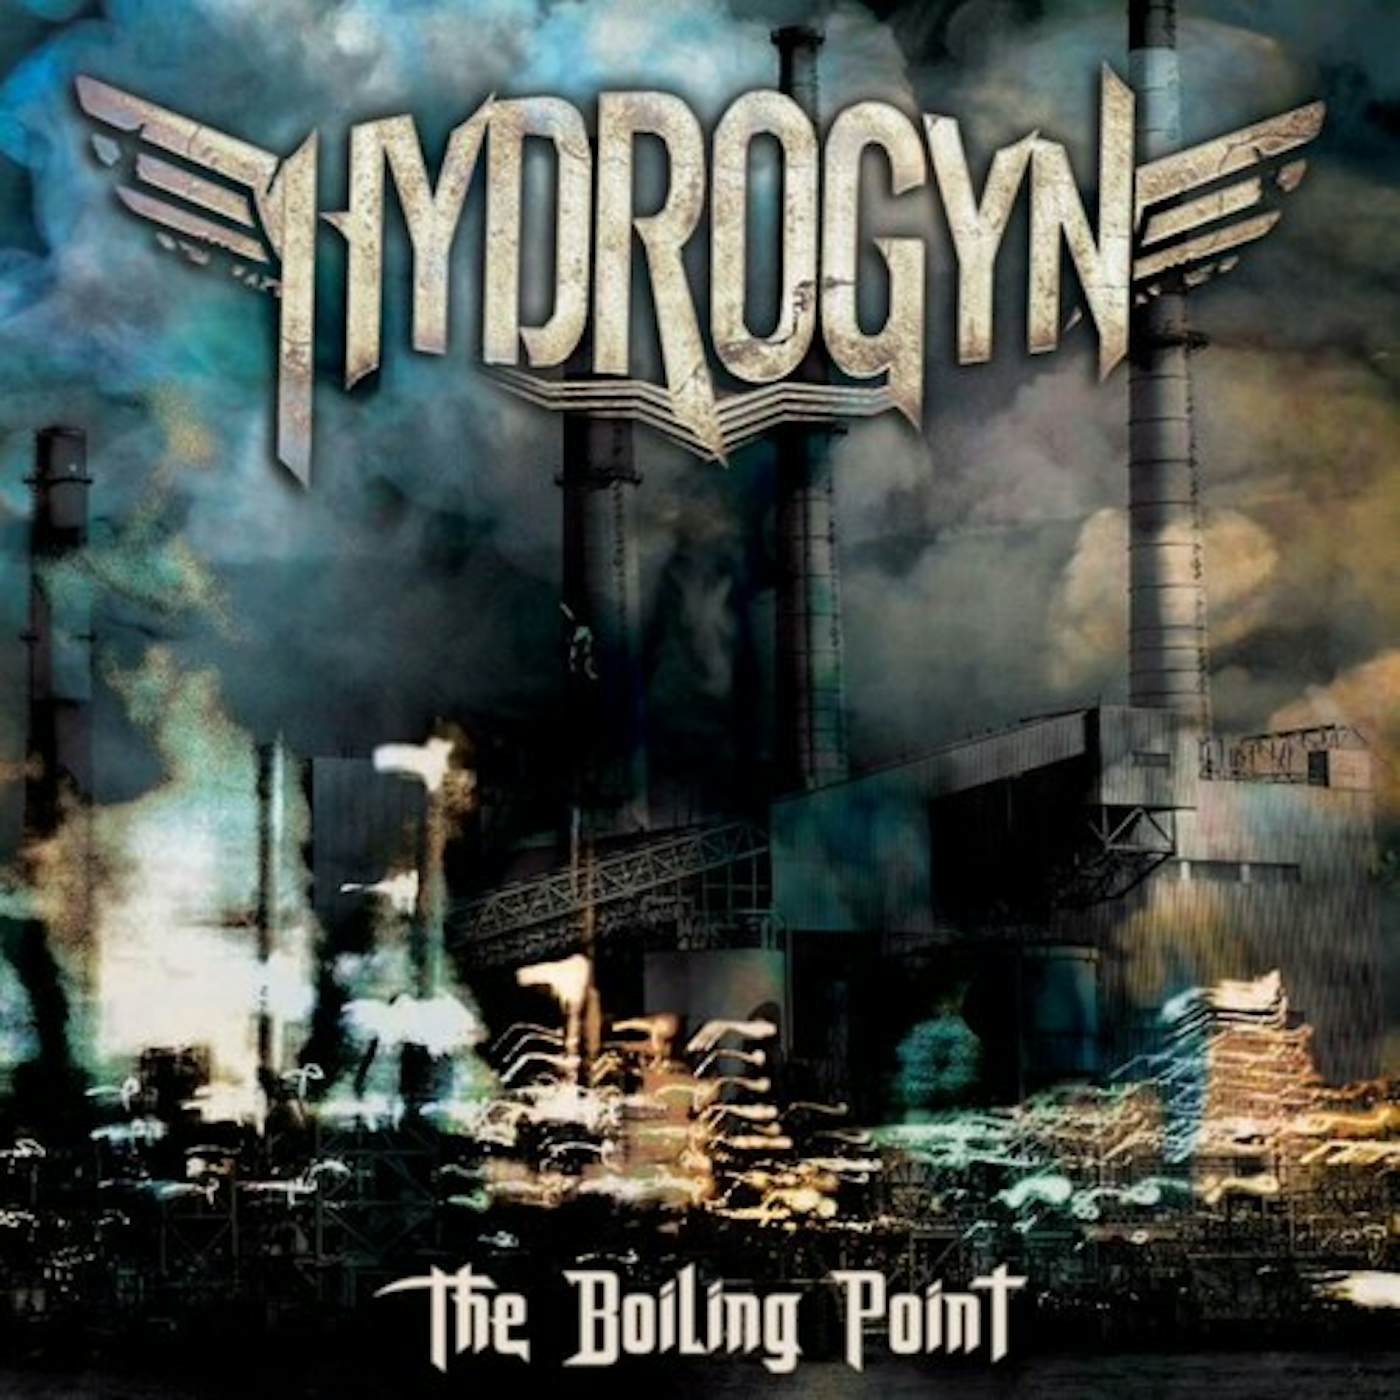 Hydrogyn BOILING POINT CD